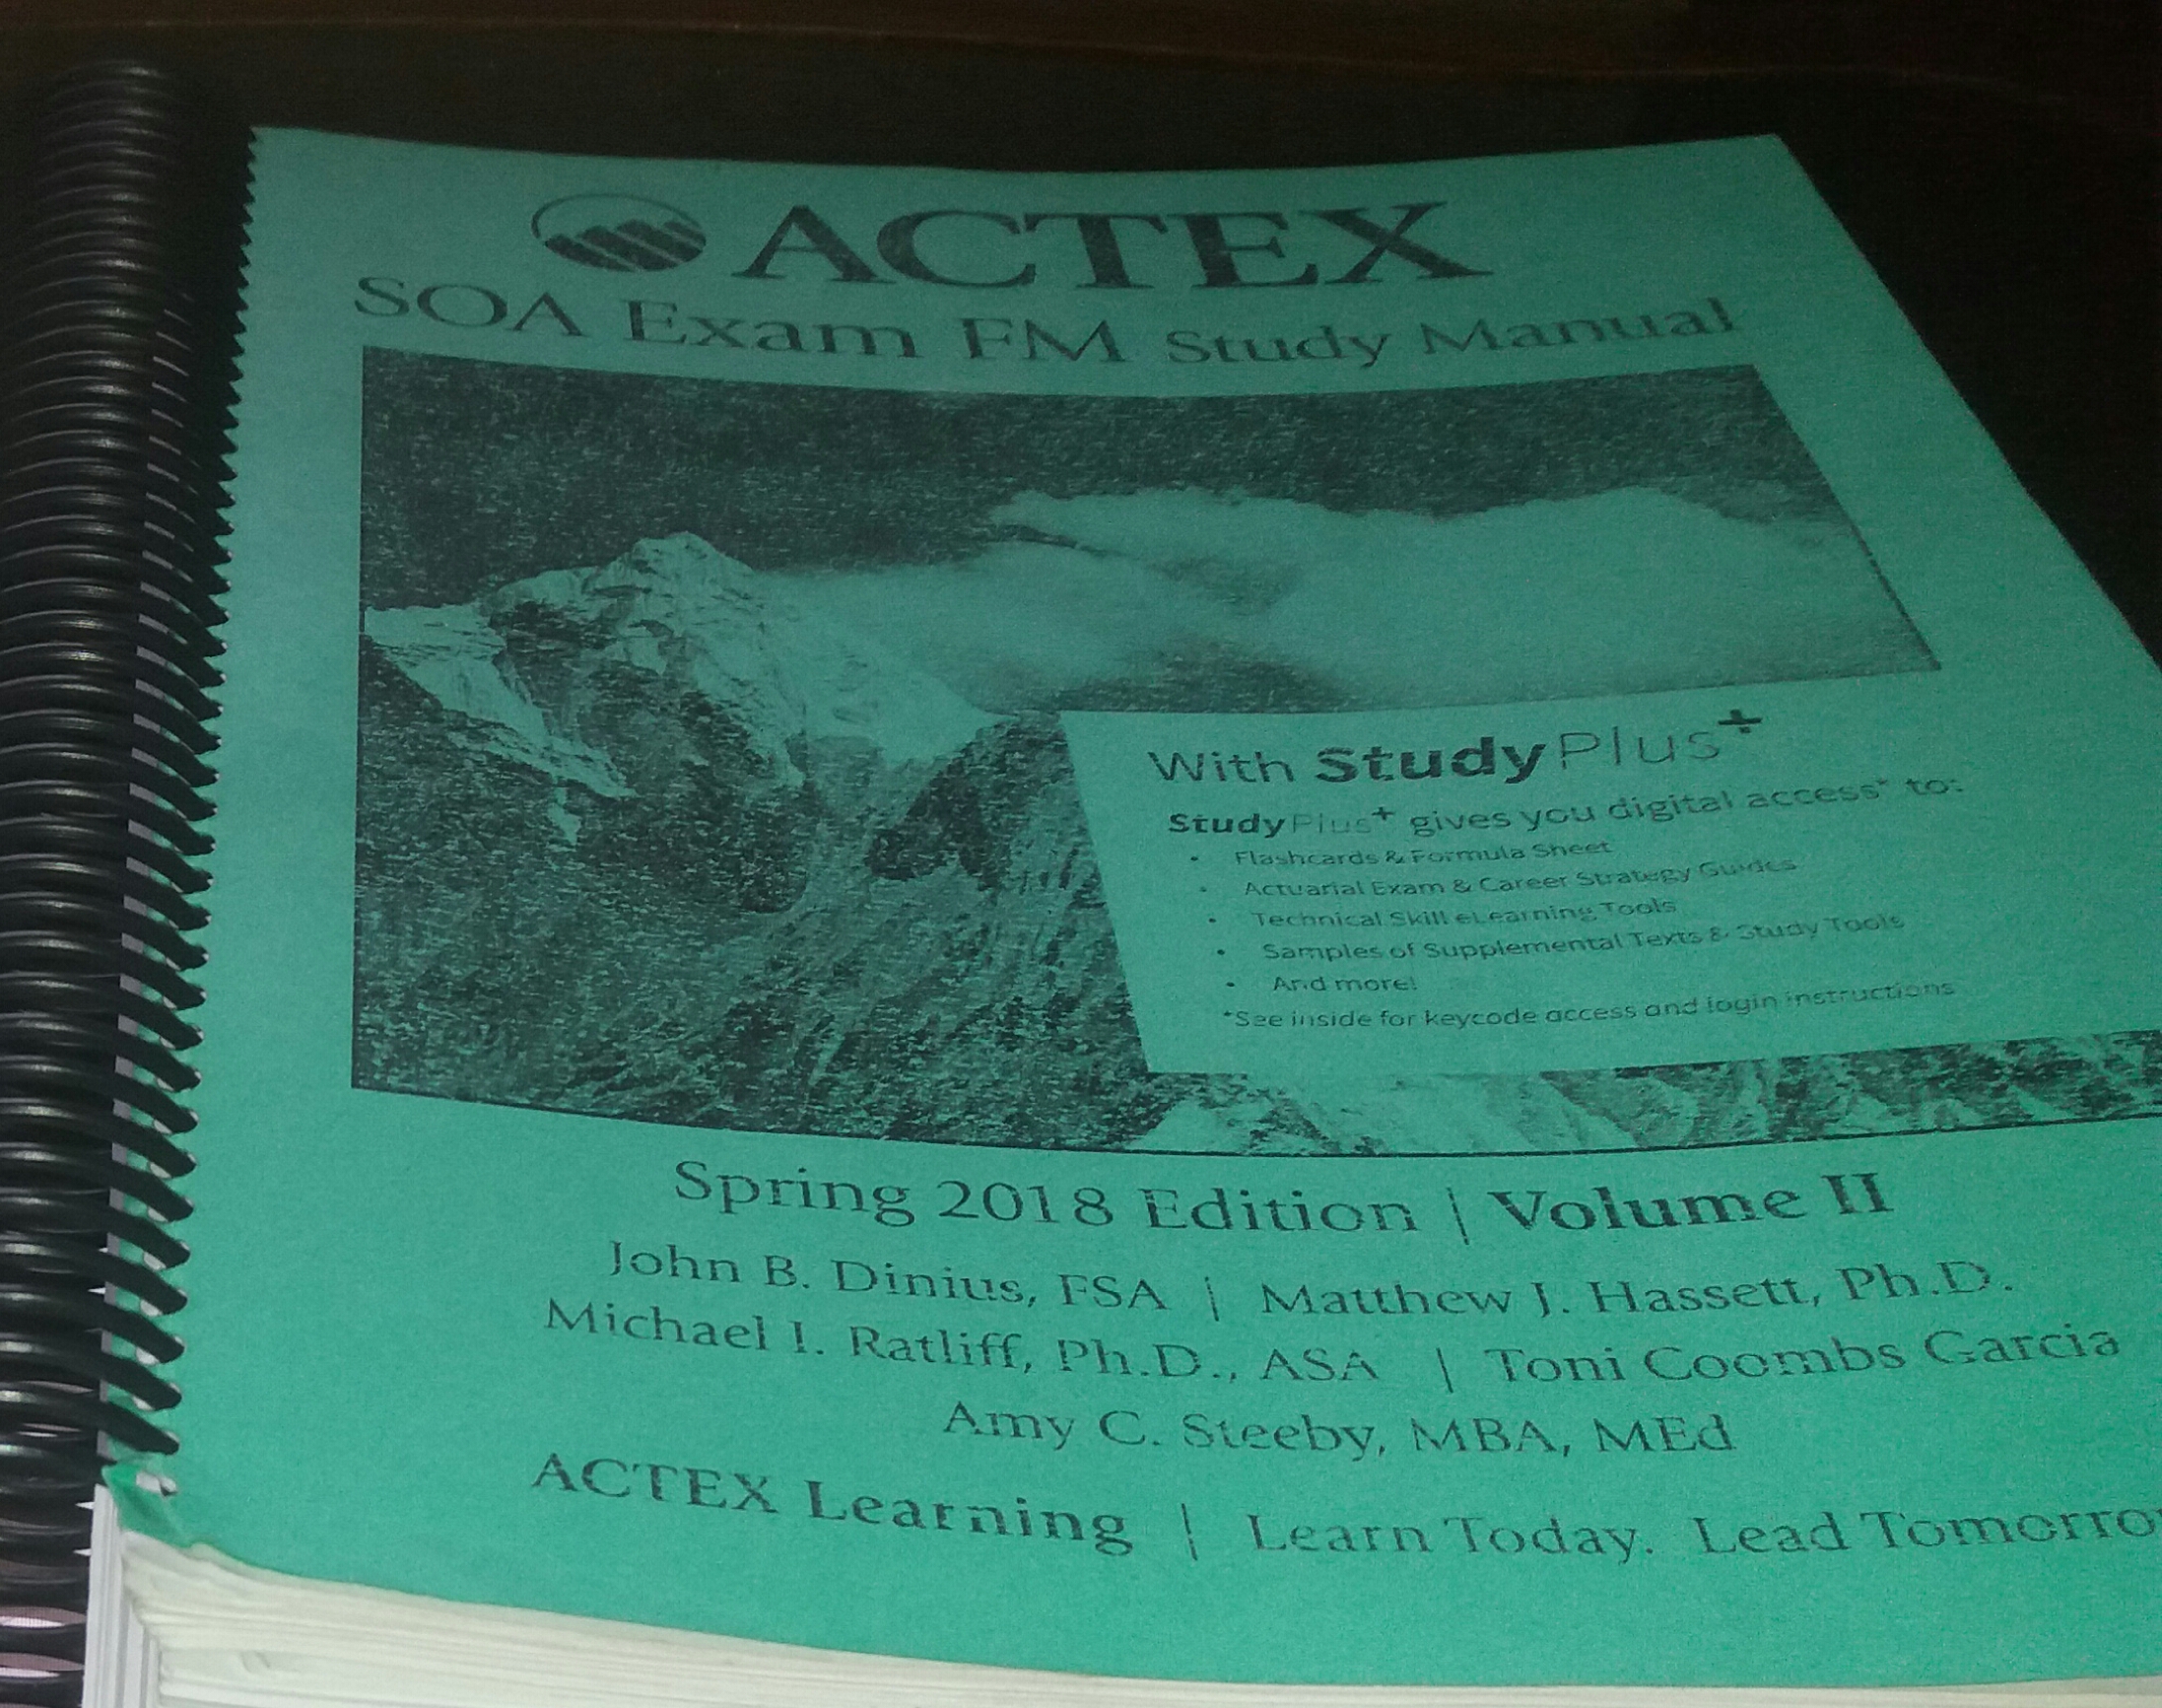 actex soa exam fm (financial mathematics) study manual 2018 edition